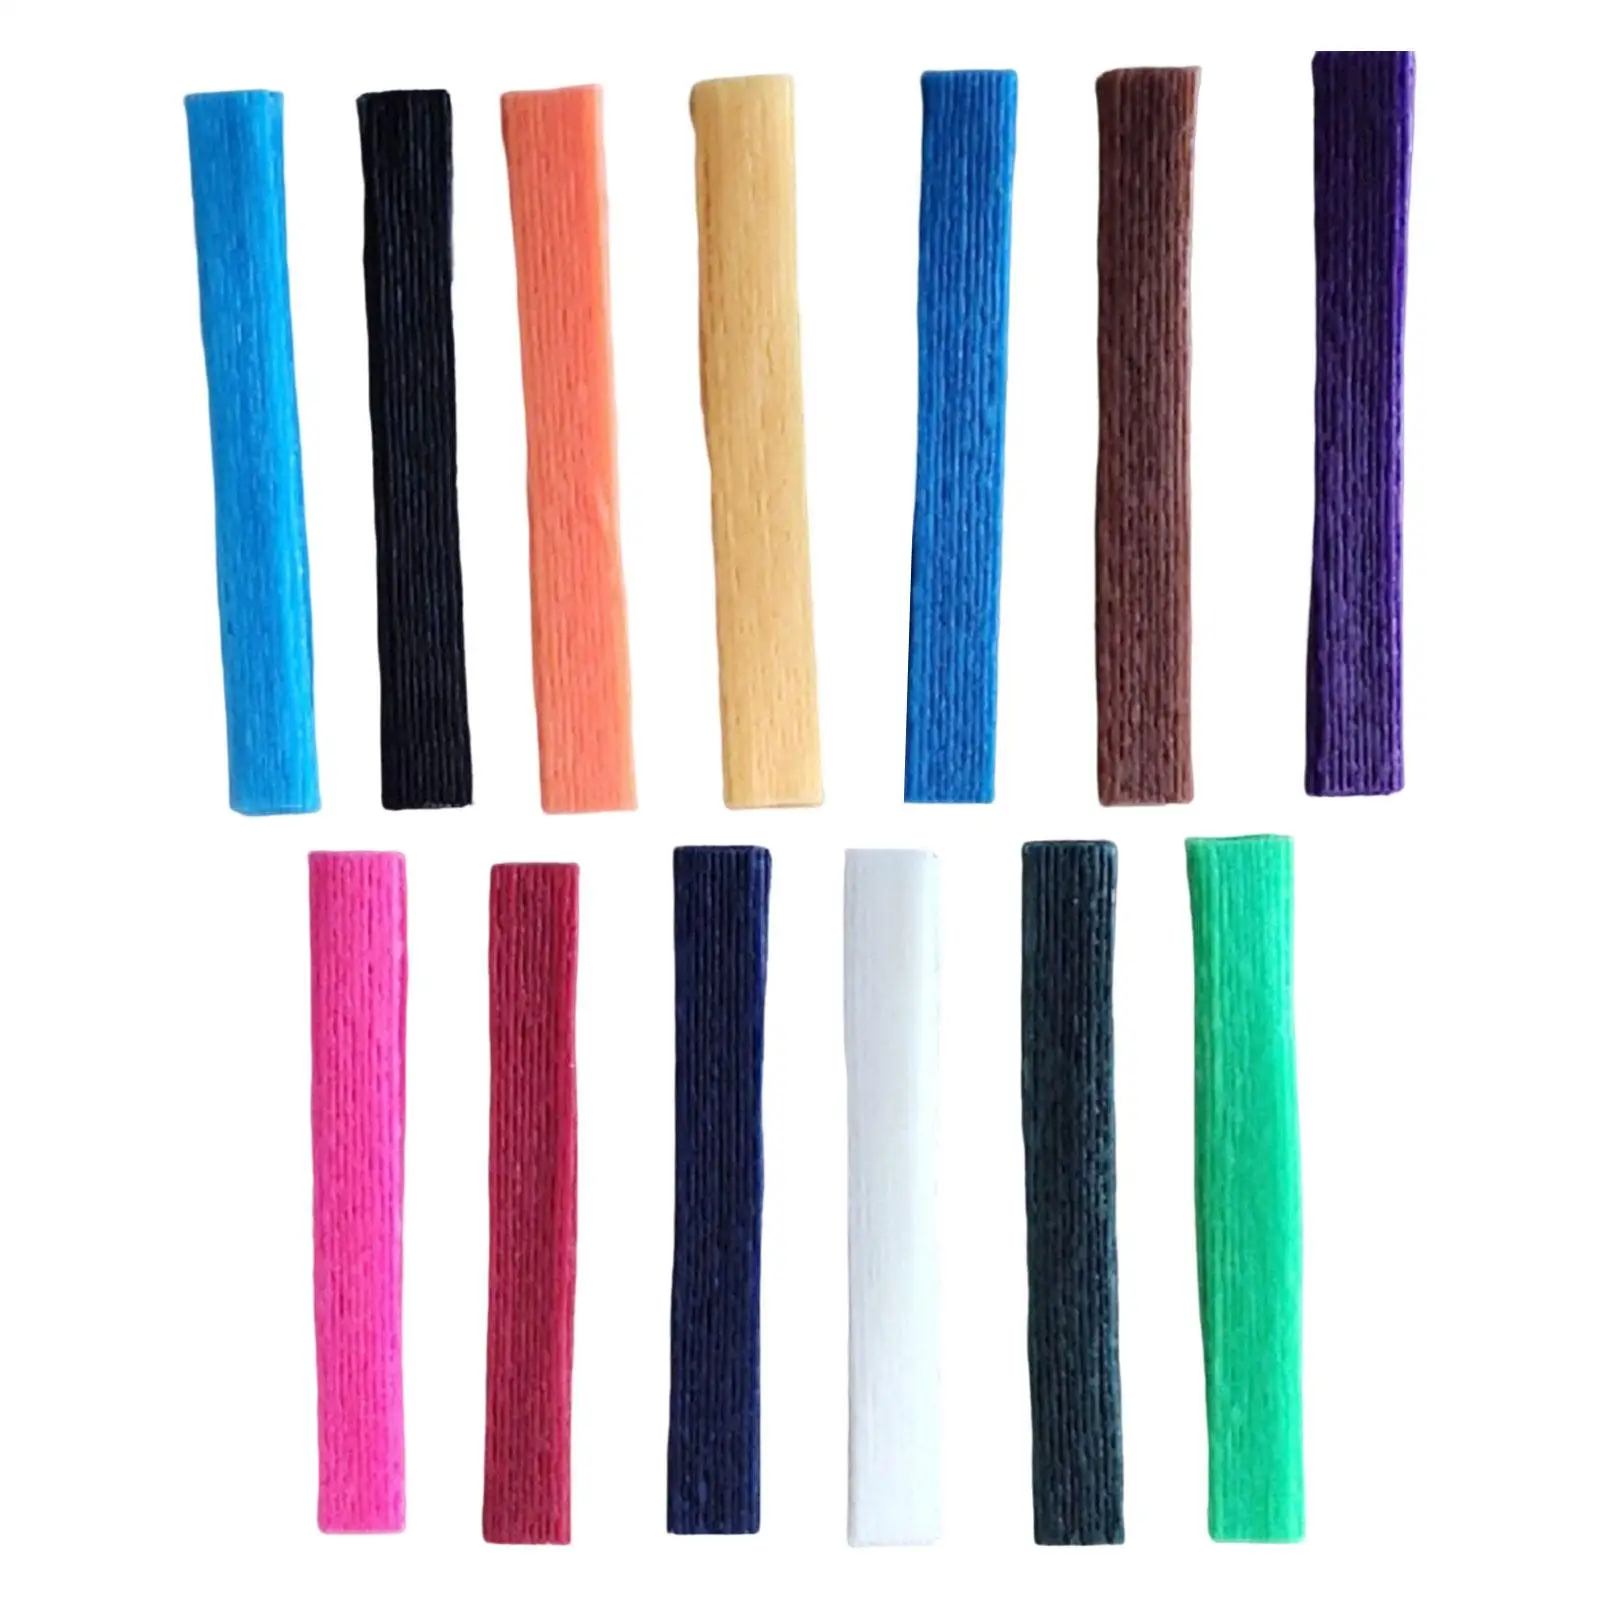 

520x Wax Craft Sticks for Kids Reusable Molding and Sculpting Sticks Wax Sticks Fidget Toy for DIY Art Supplies Travel Home